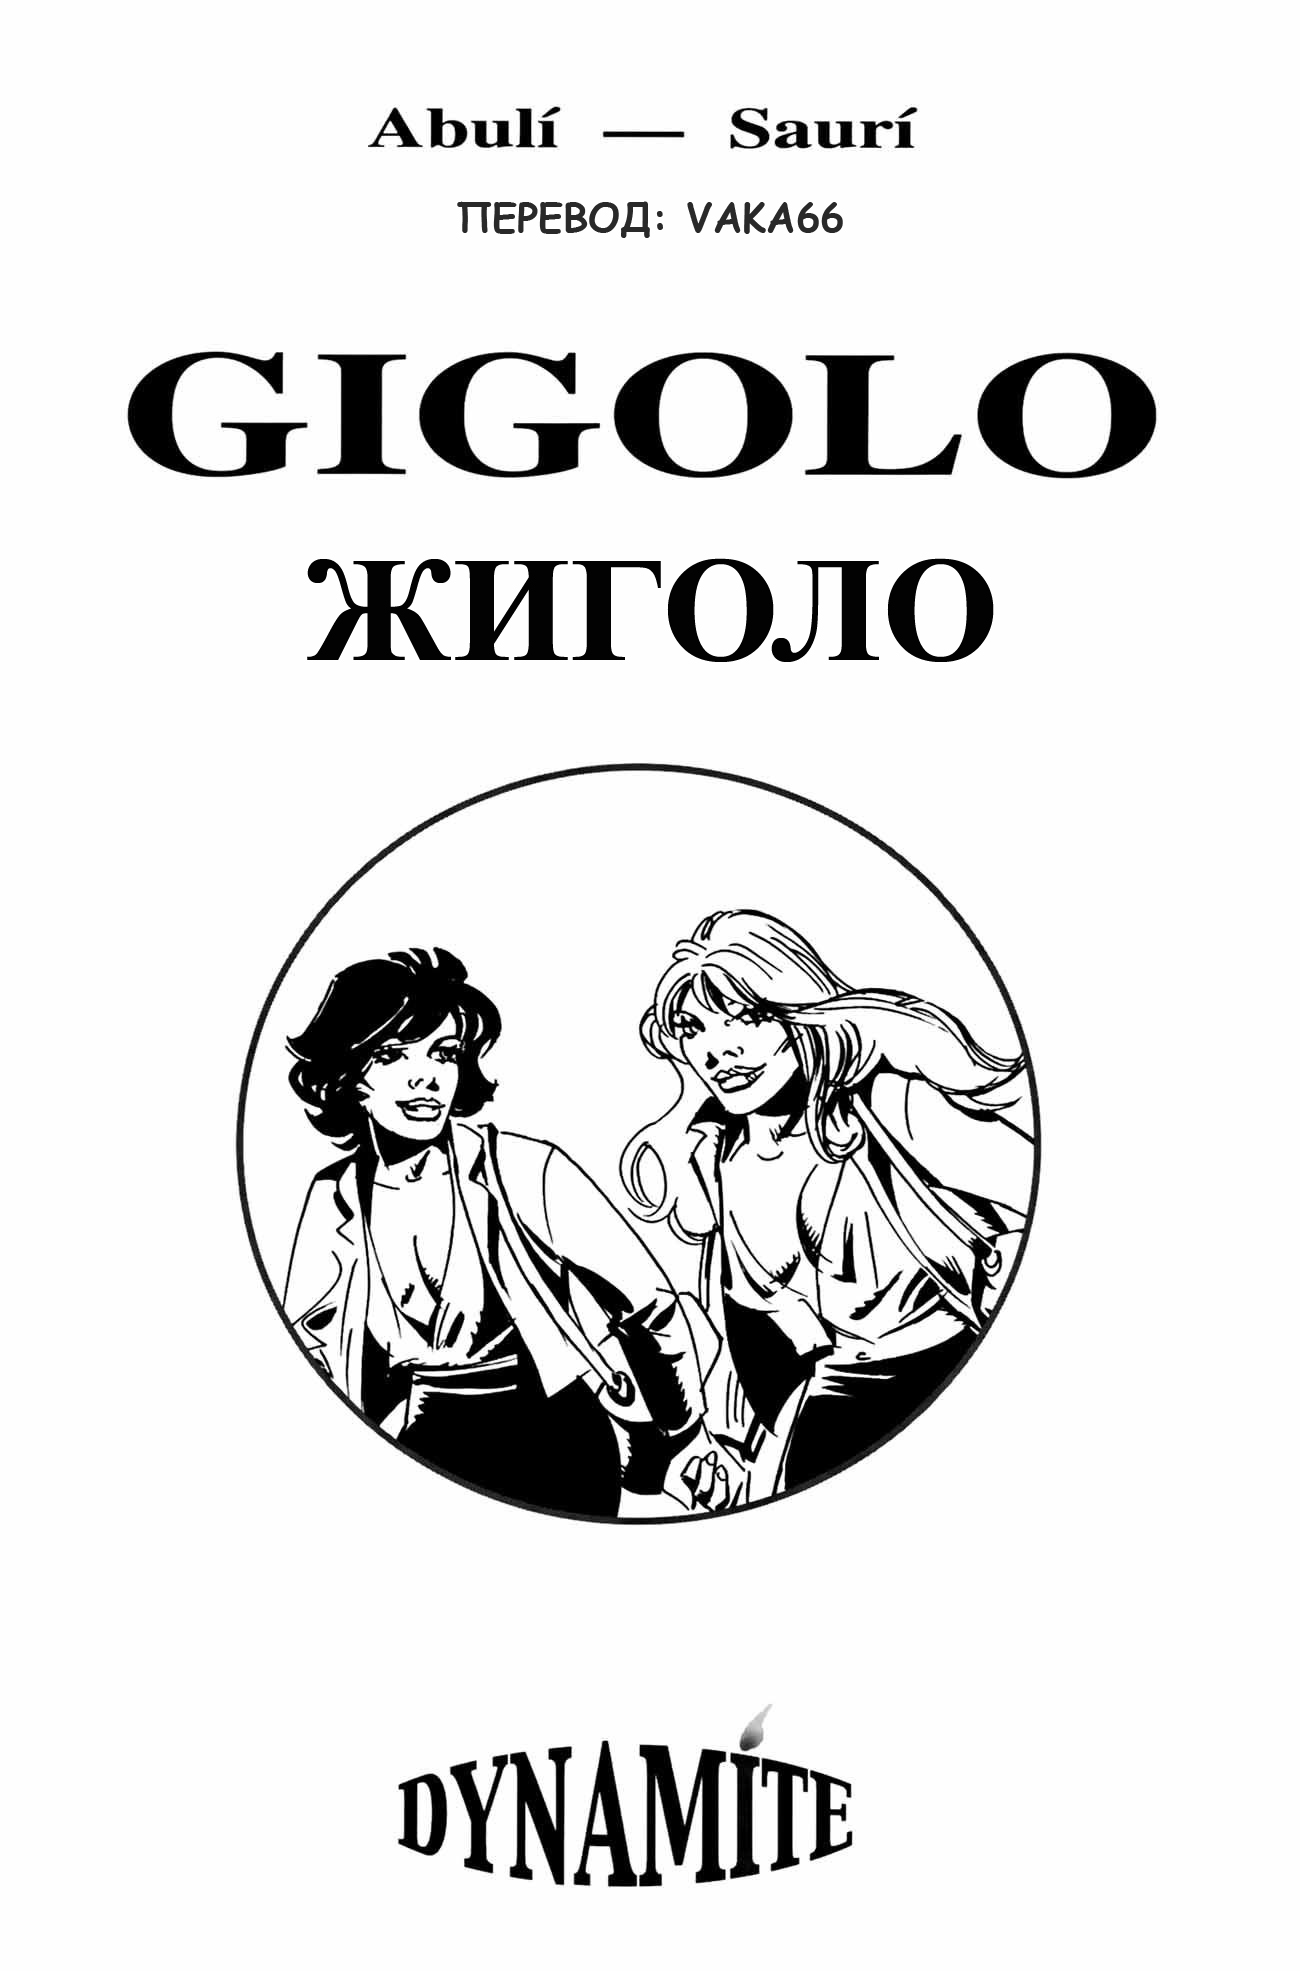 Gigolo (2)